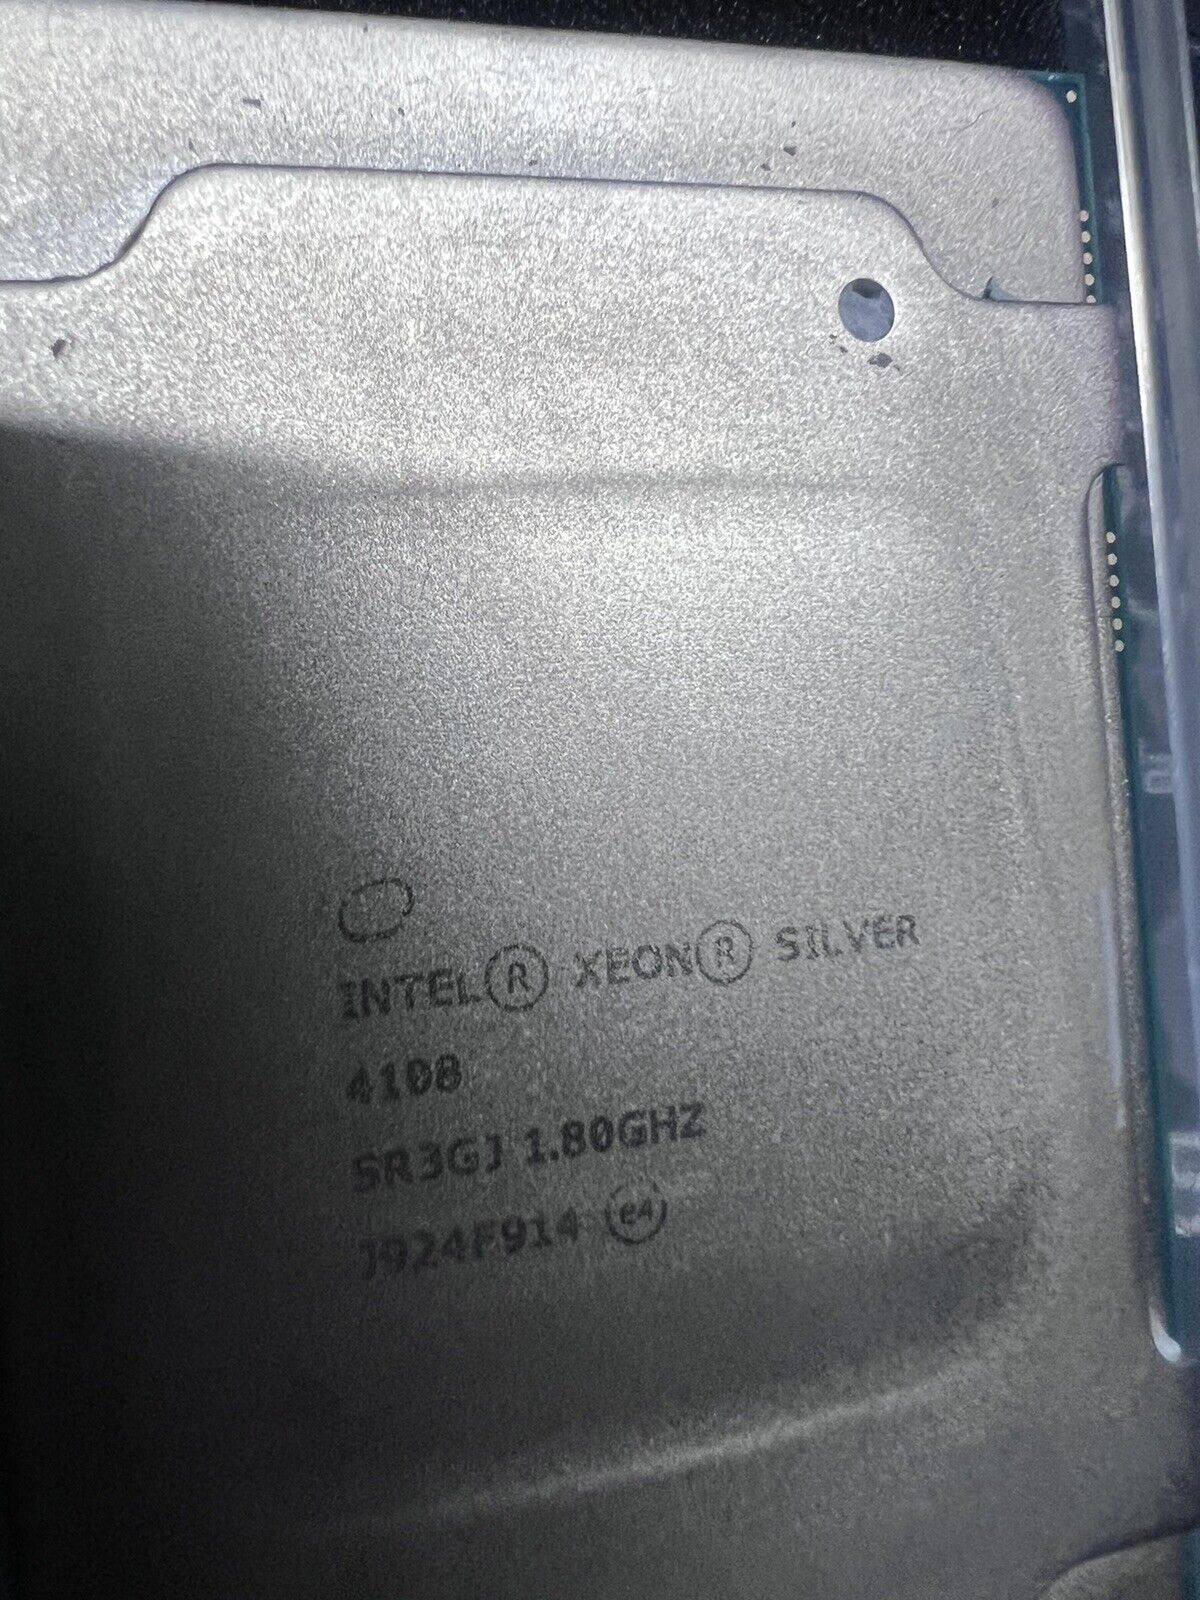 INTEL SR3GJ XEON-SILVER 4108 1.80GHZ PROCESSOR